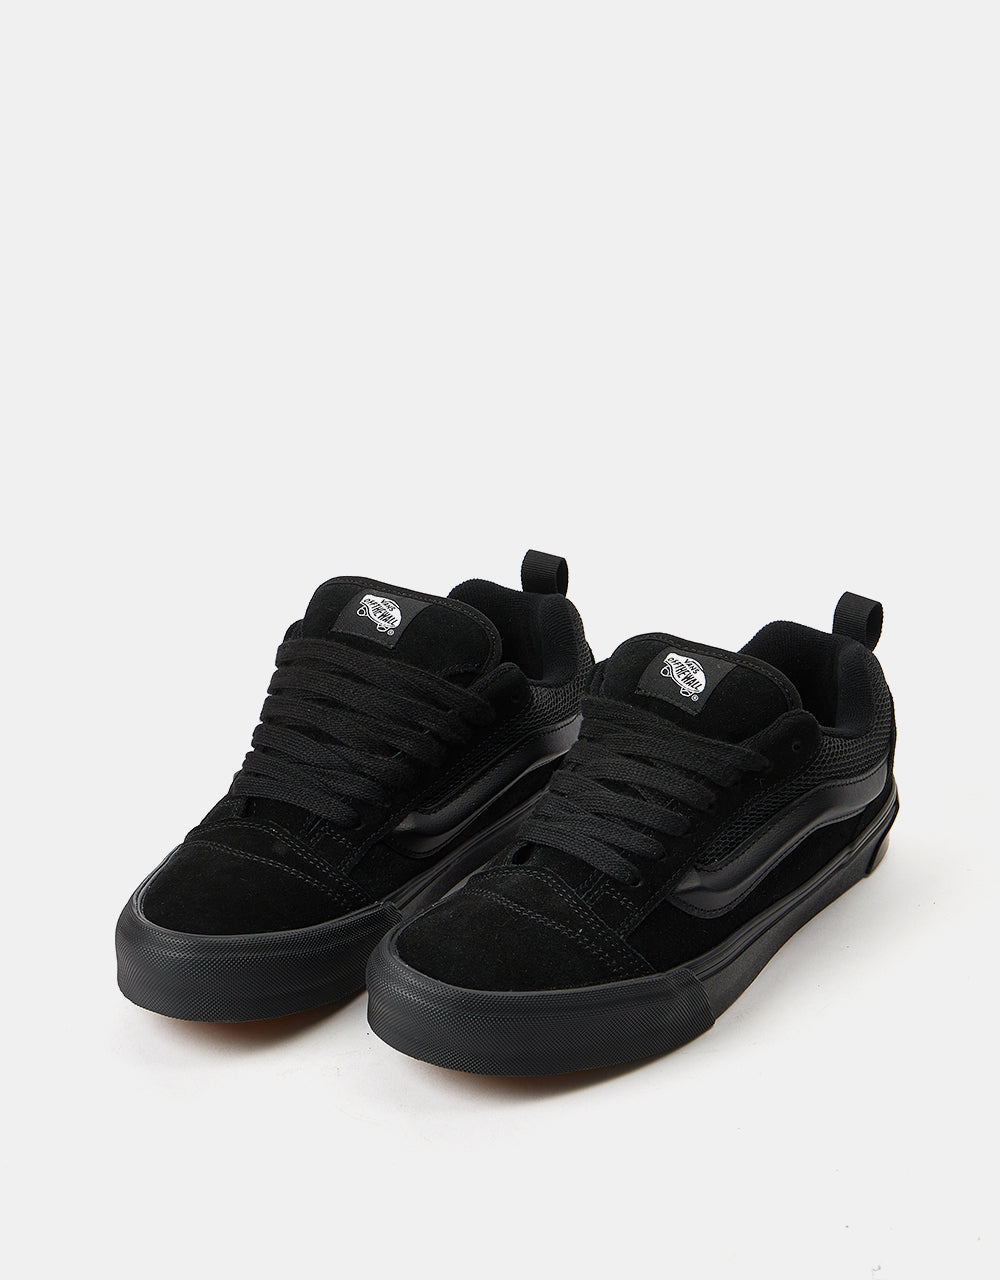 Vans Knu Skool Skate Shoes -  Black/Black